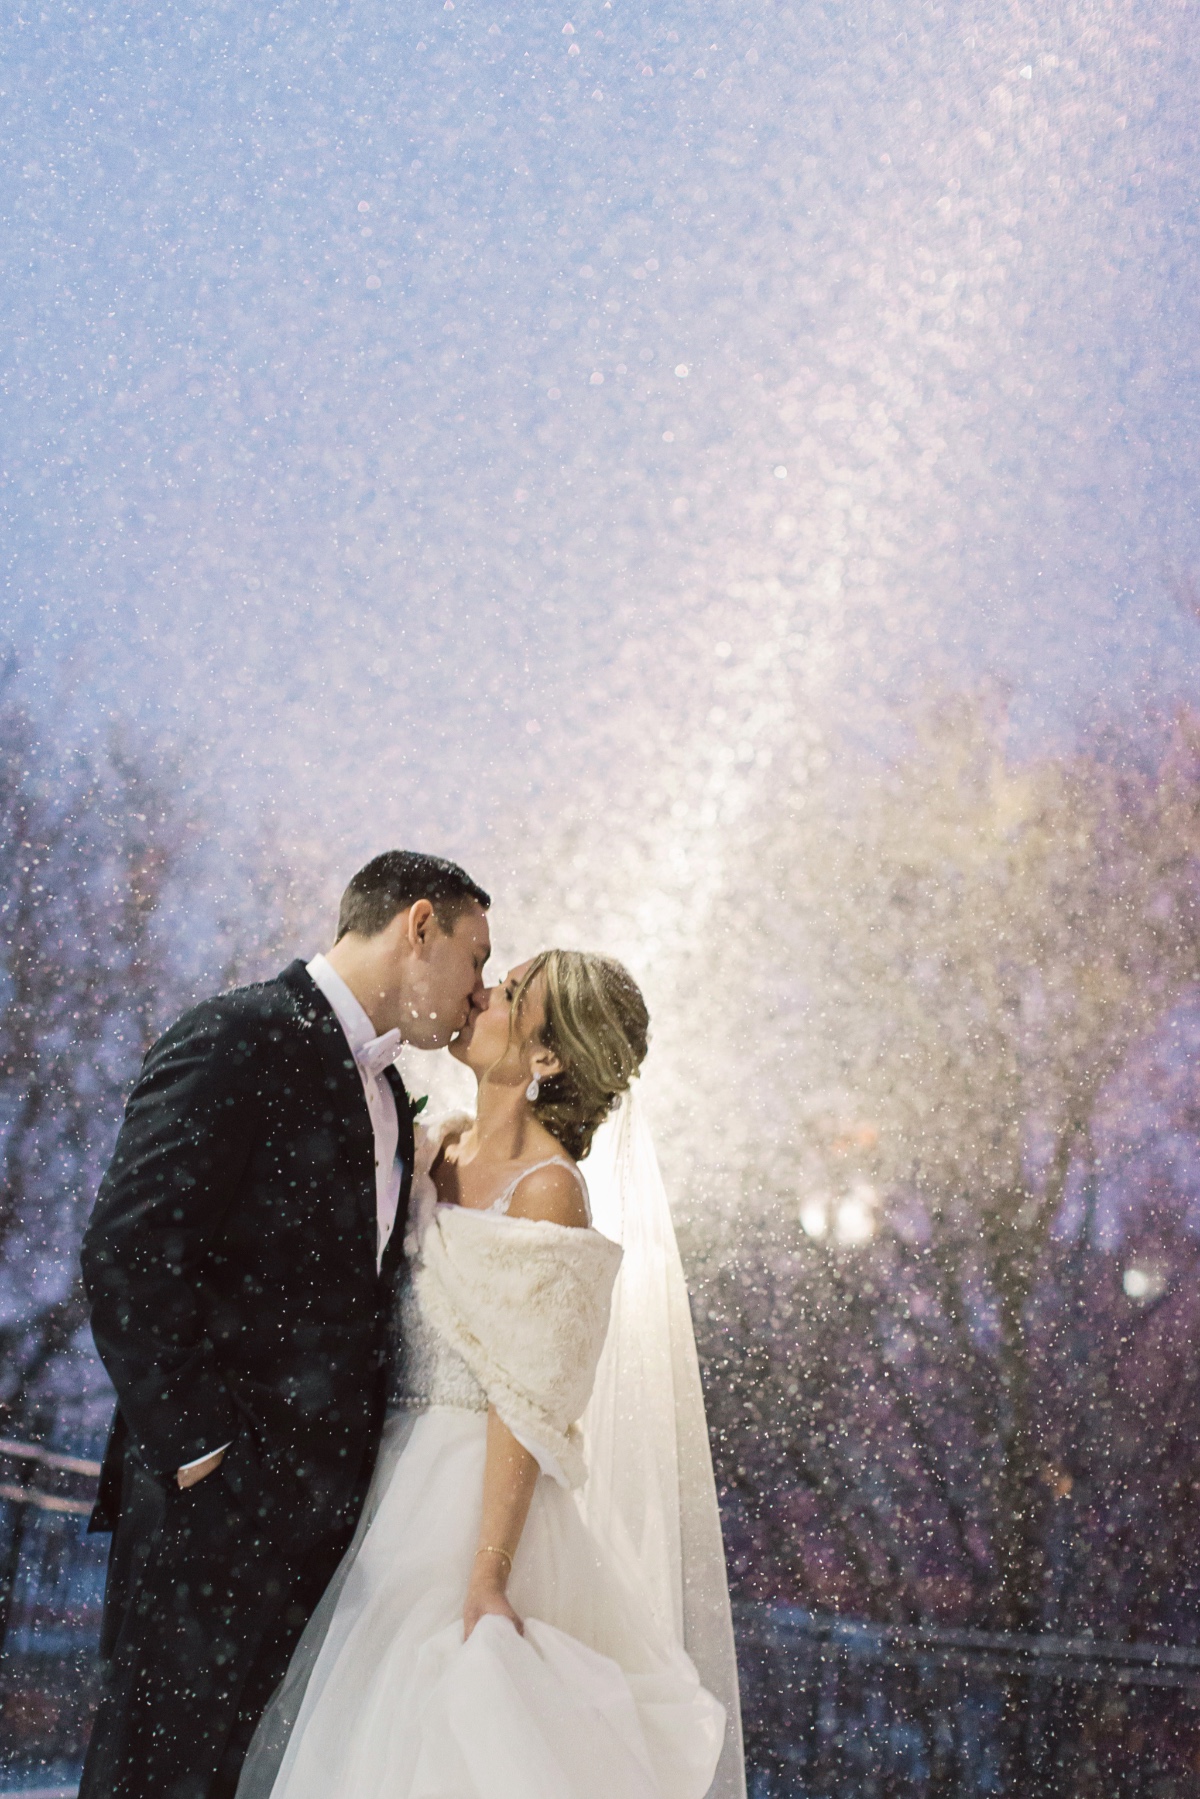 Snowy wedding shot